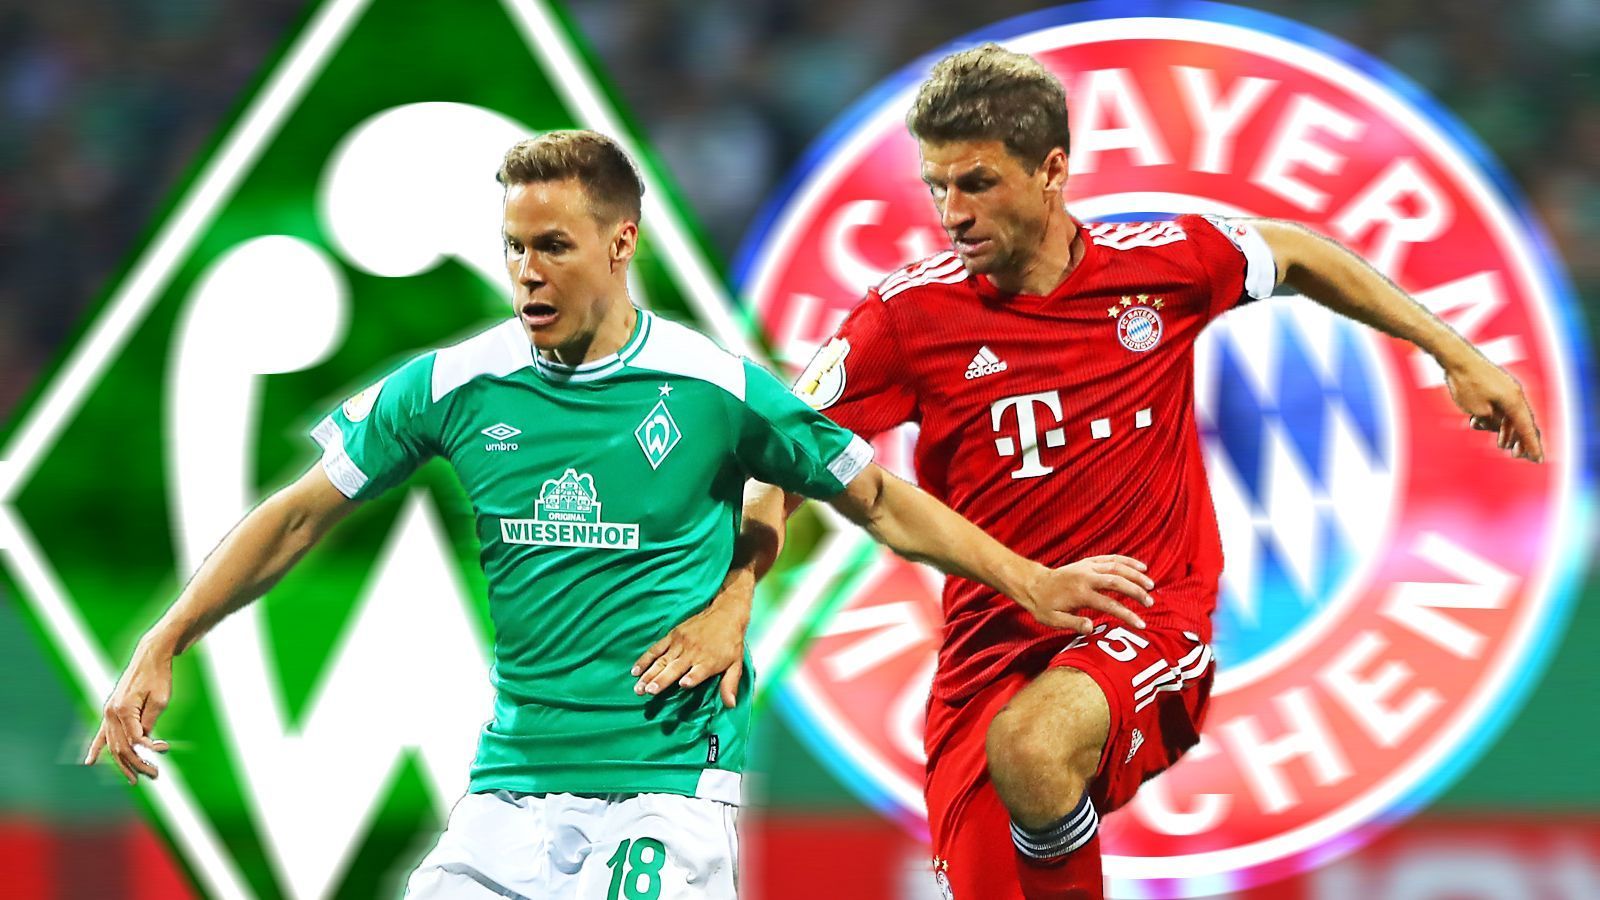 Pokal-Knüller Bremen- und Bayern-Stars in der Einzelkritik